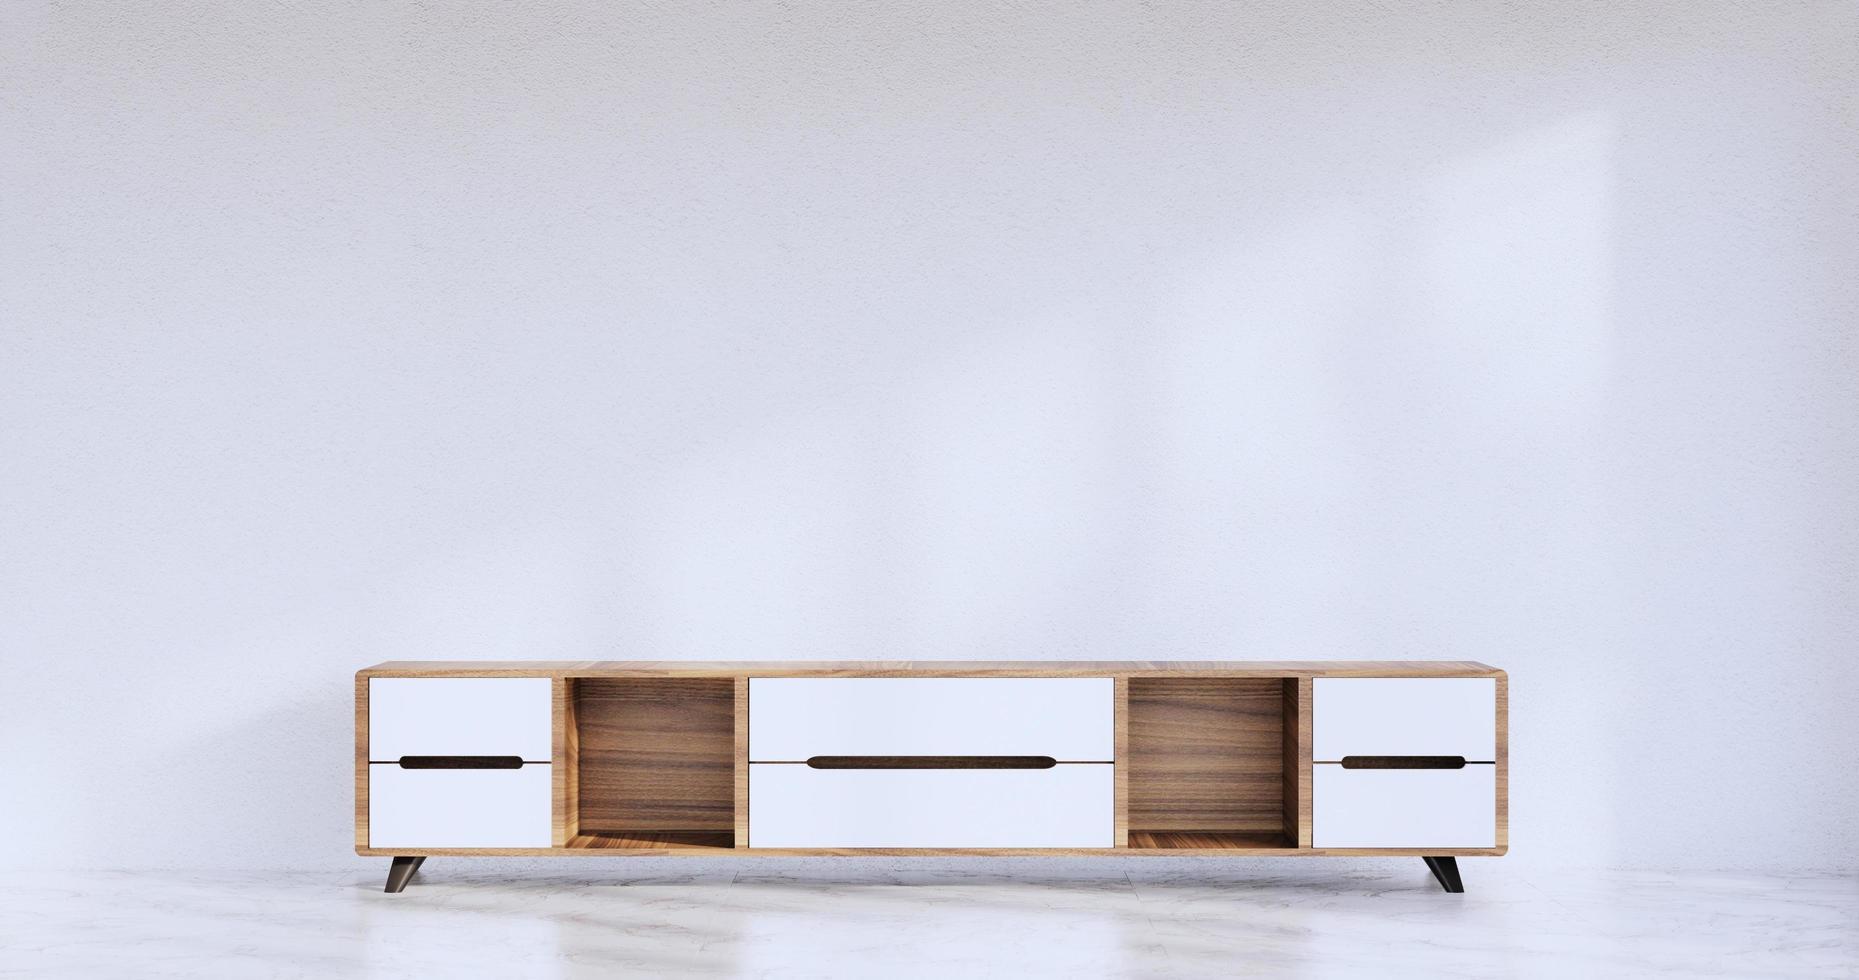 kabinet houten Japans ontwerp op woonkamer zen stijl lege muur background.3d rendering foto